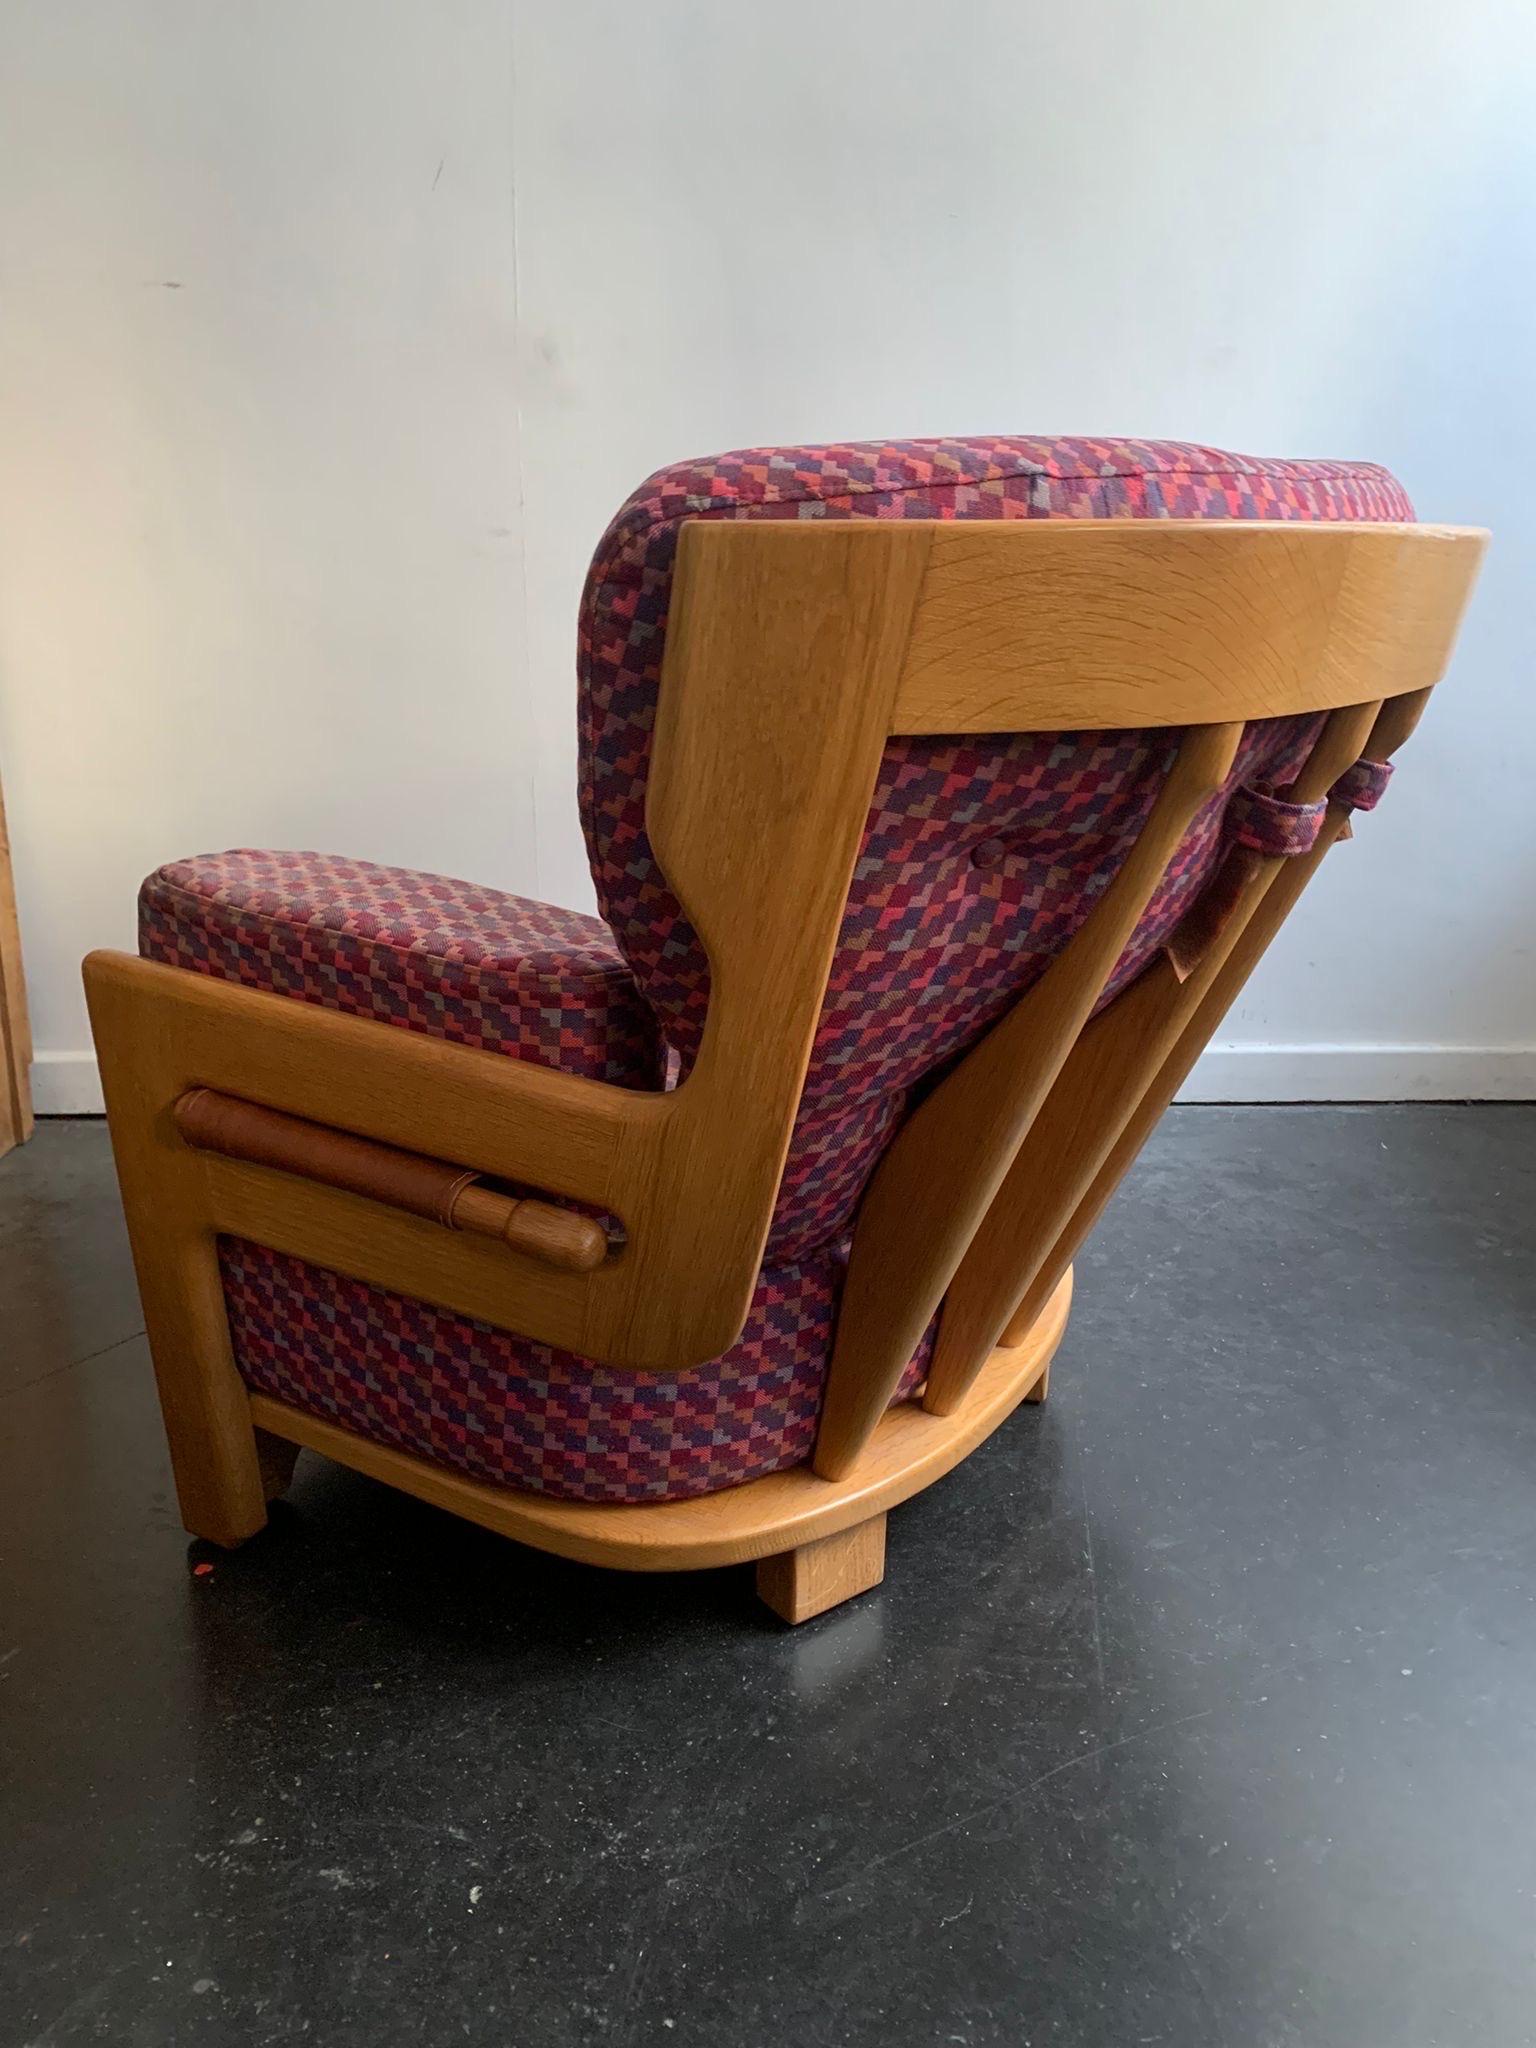 fauteuil avec son ottoman (rare) réalisé par Jacques Chambron et Robert Guillerme  avec un dossier très haut
en chêne offrent une assise très confortable
